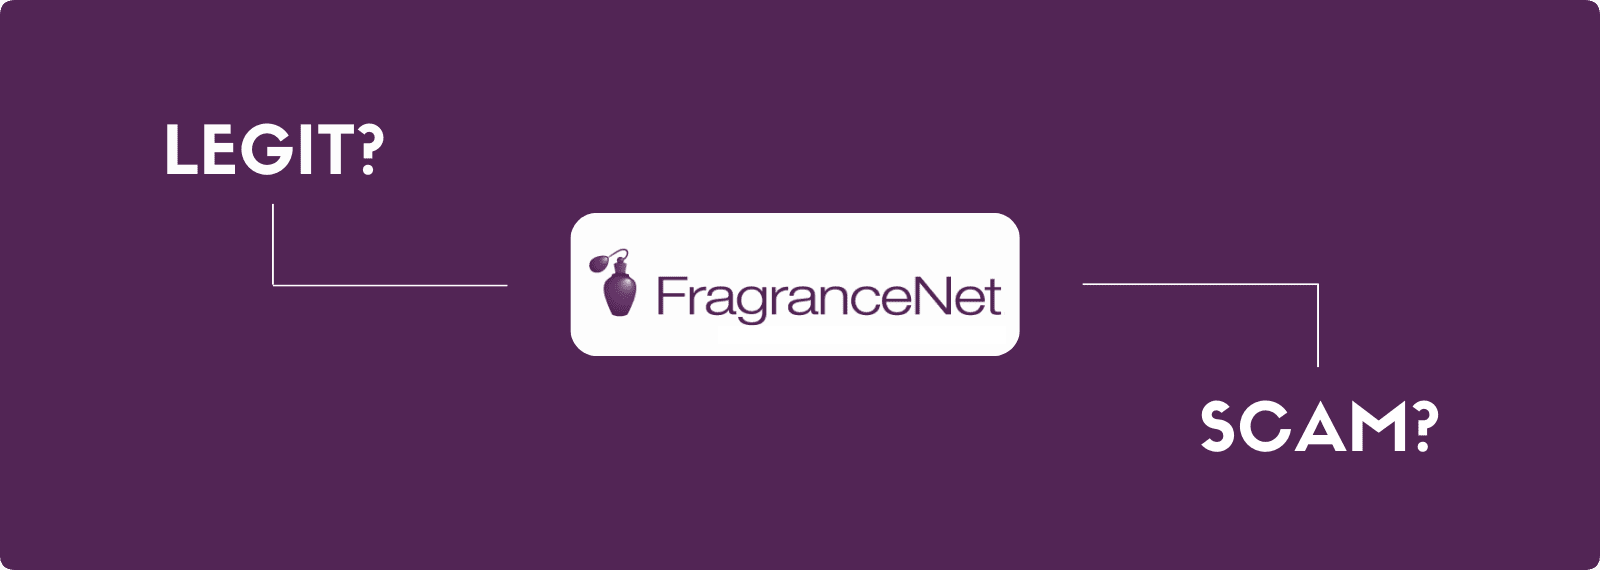 is fragrancenet legitimate